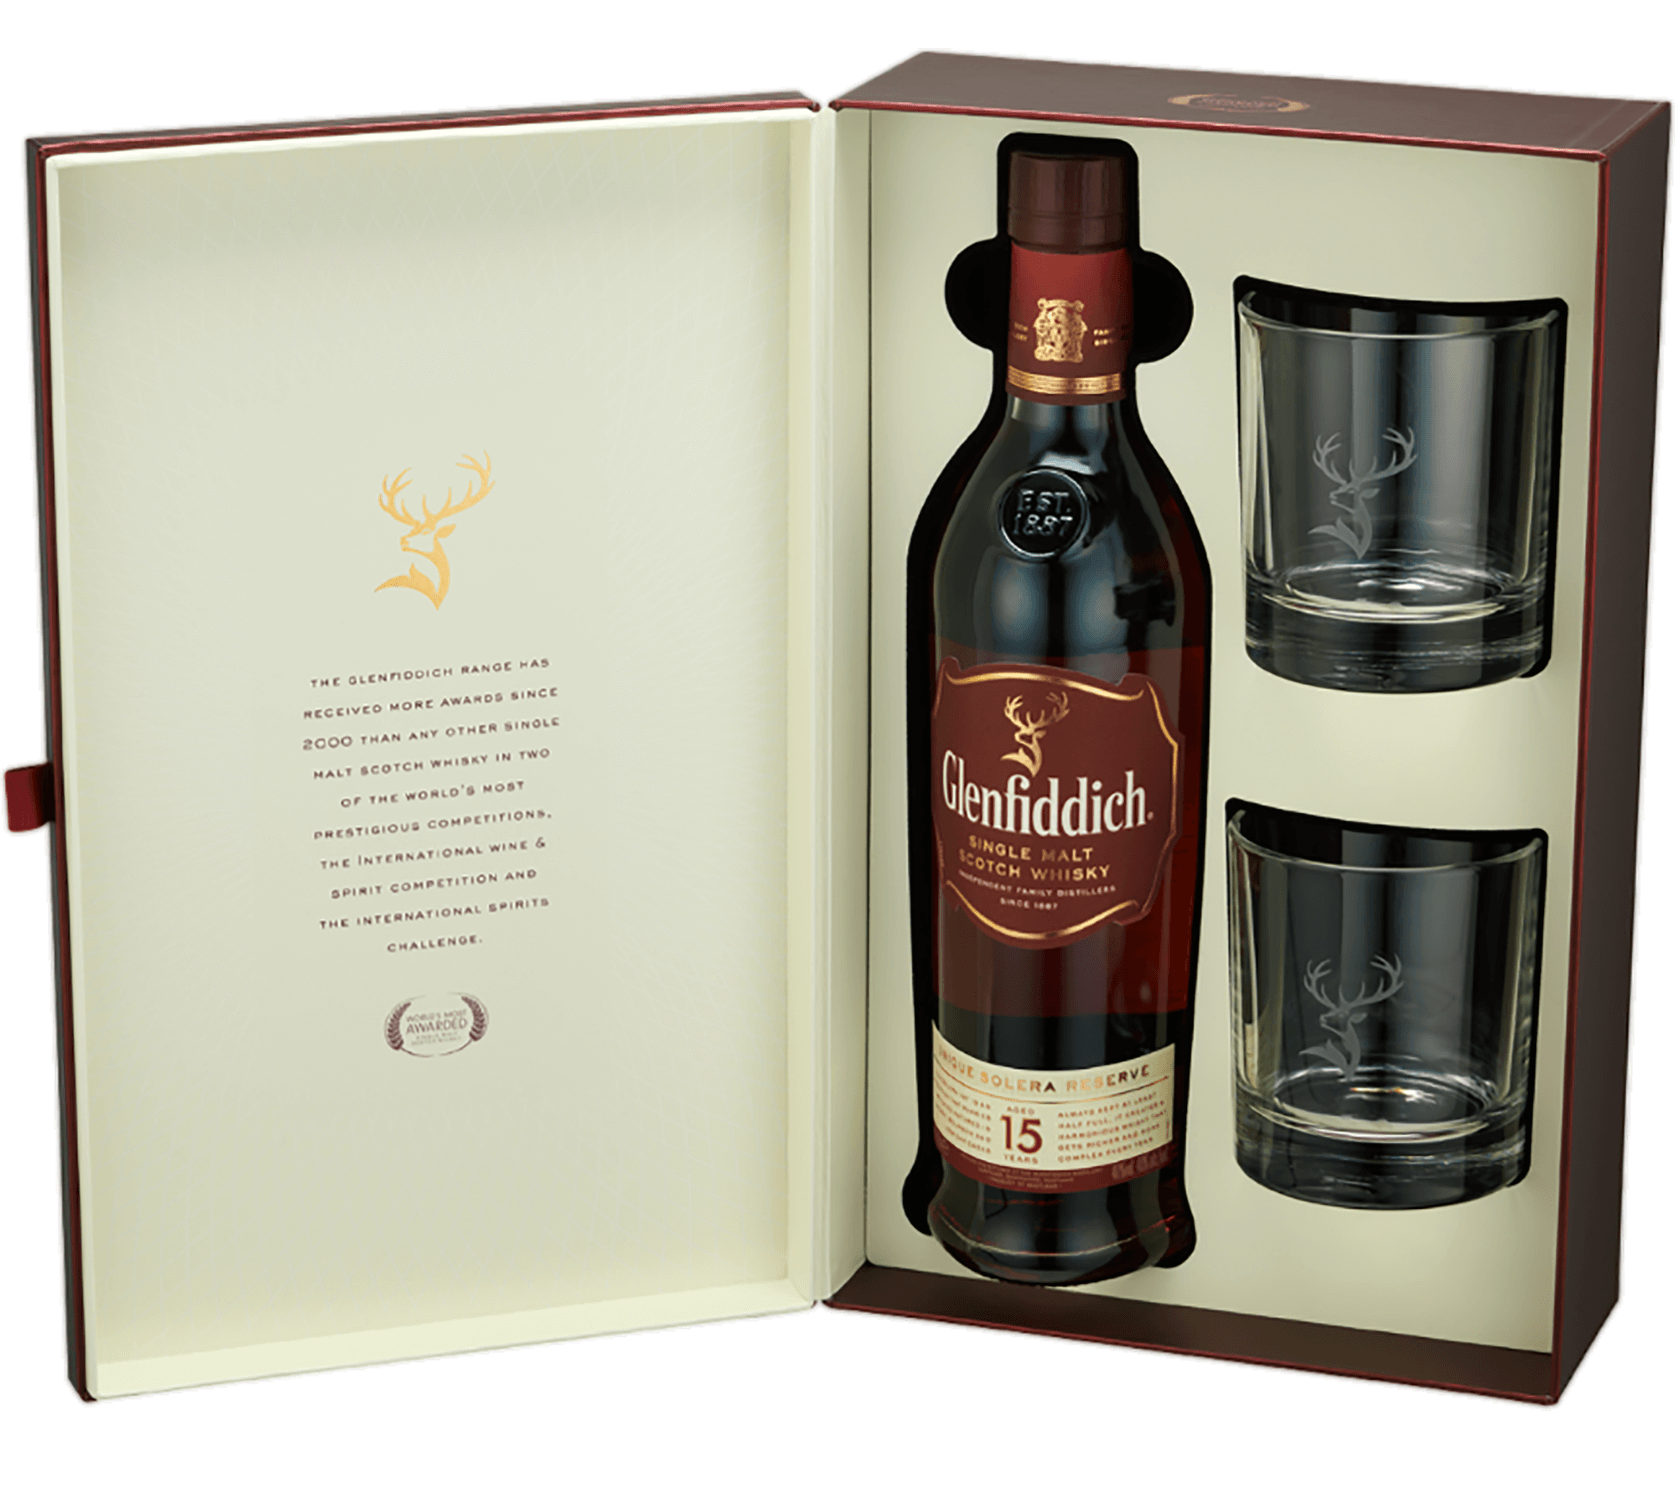 Glenfiddich 15 y.o. Single Malt Scotch Whisky (gift box with 2 glasses) glenfiddich single malt scotch whisky 15 yo gift box